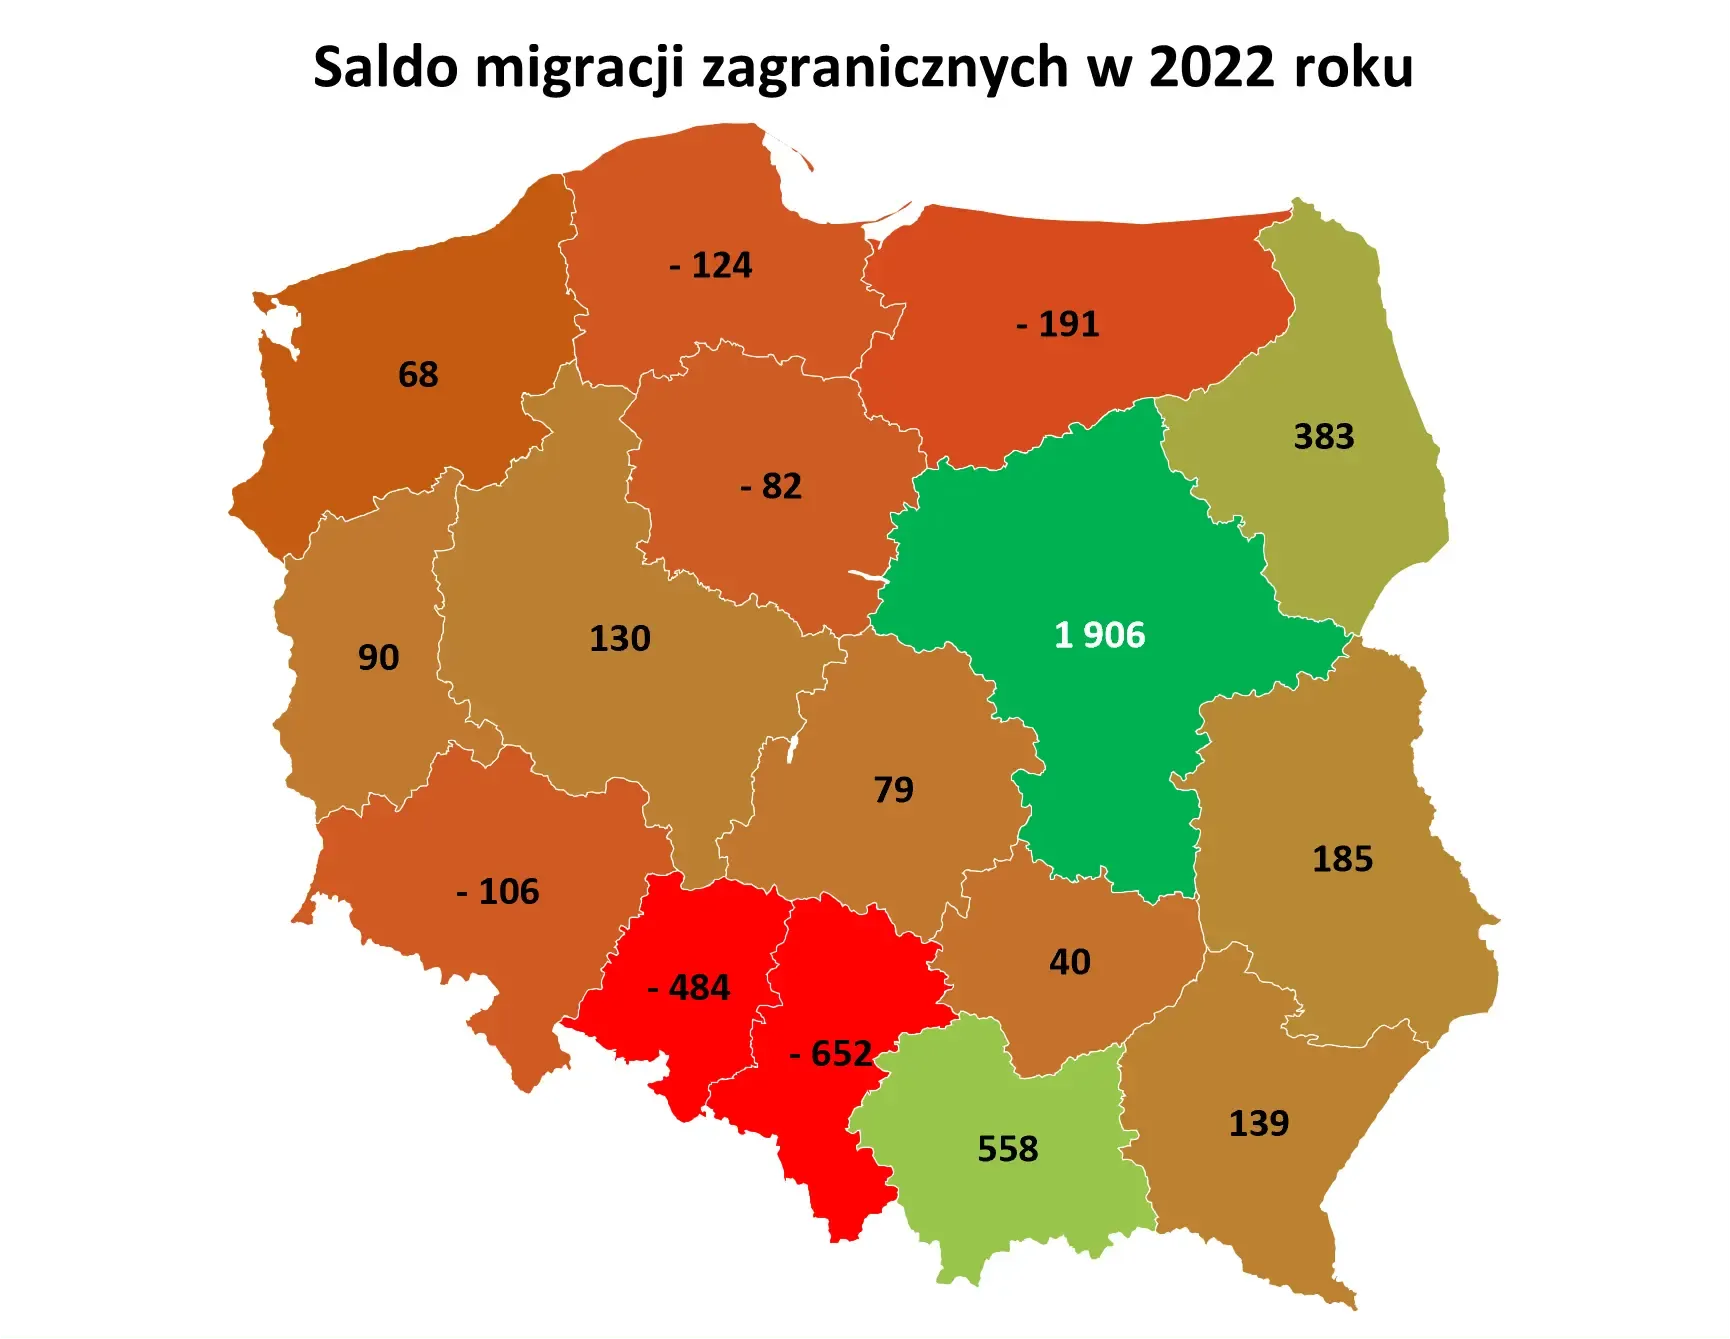 Mapa przedstawia saldo migracji zagranicznych w Polsce w podziale na województwa